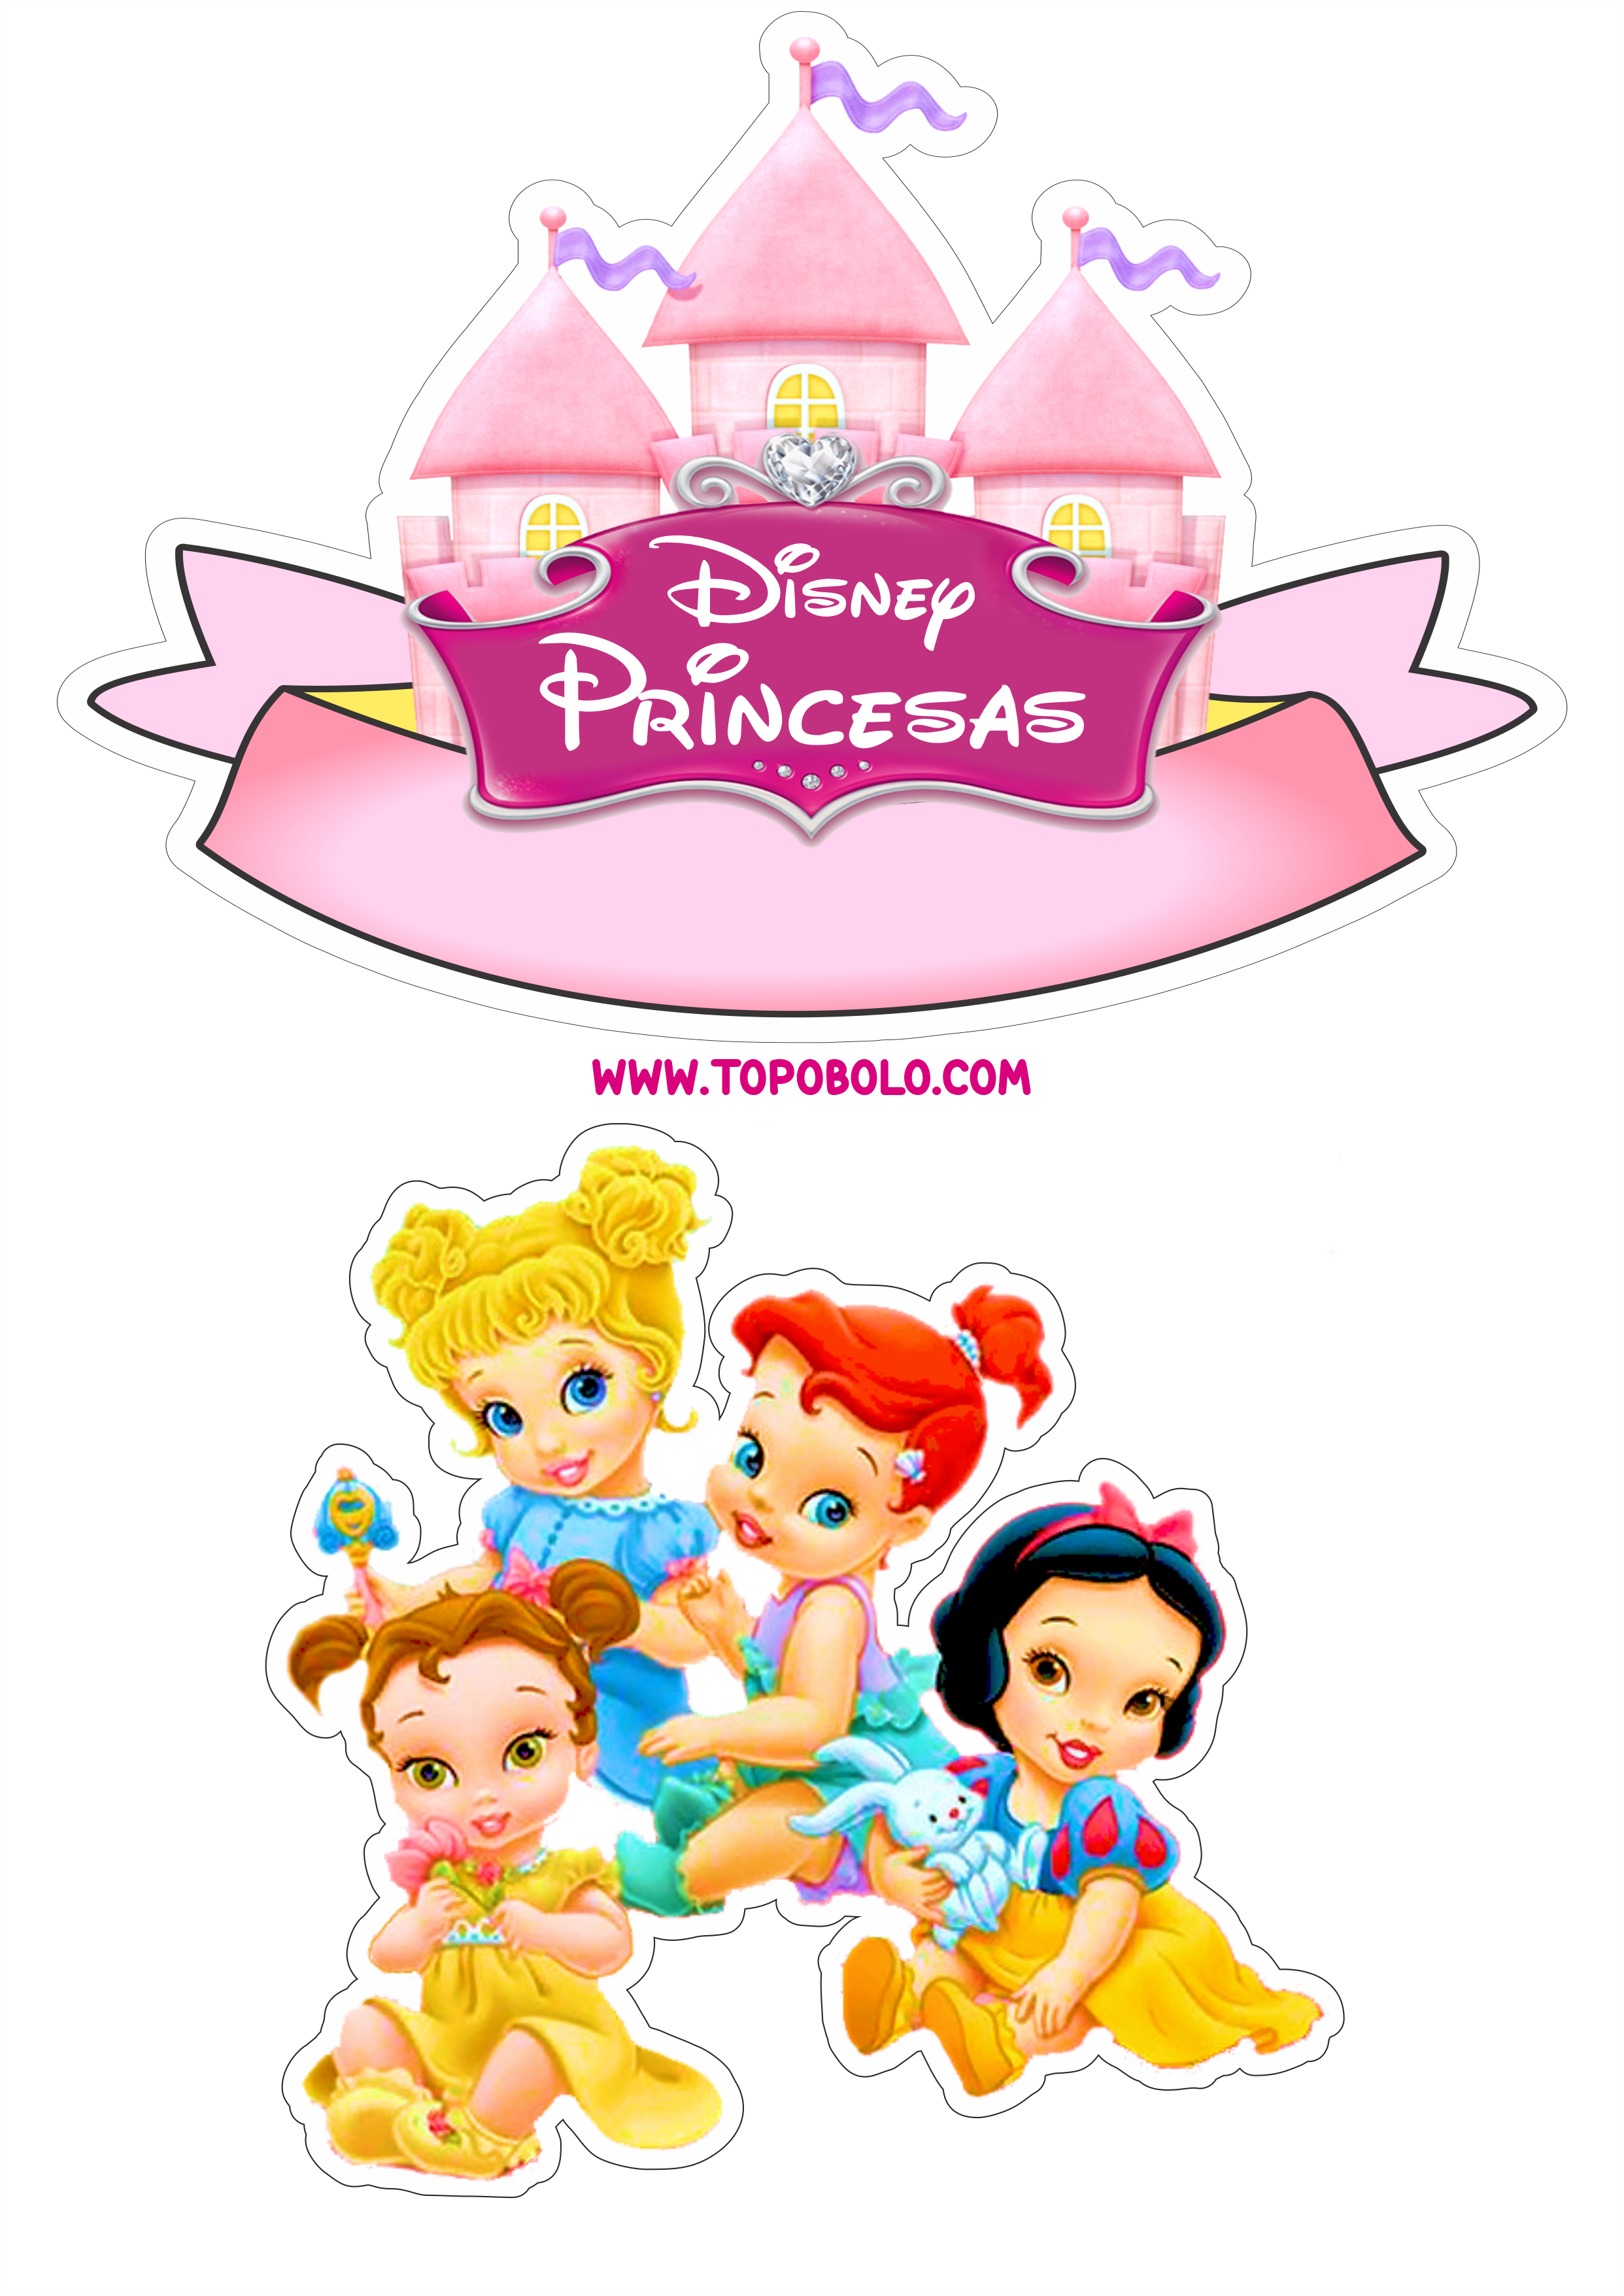 Princesas Disney topo de bolo pronto para imprimir aniversário png